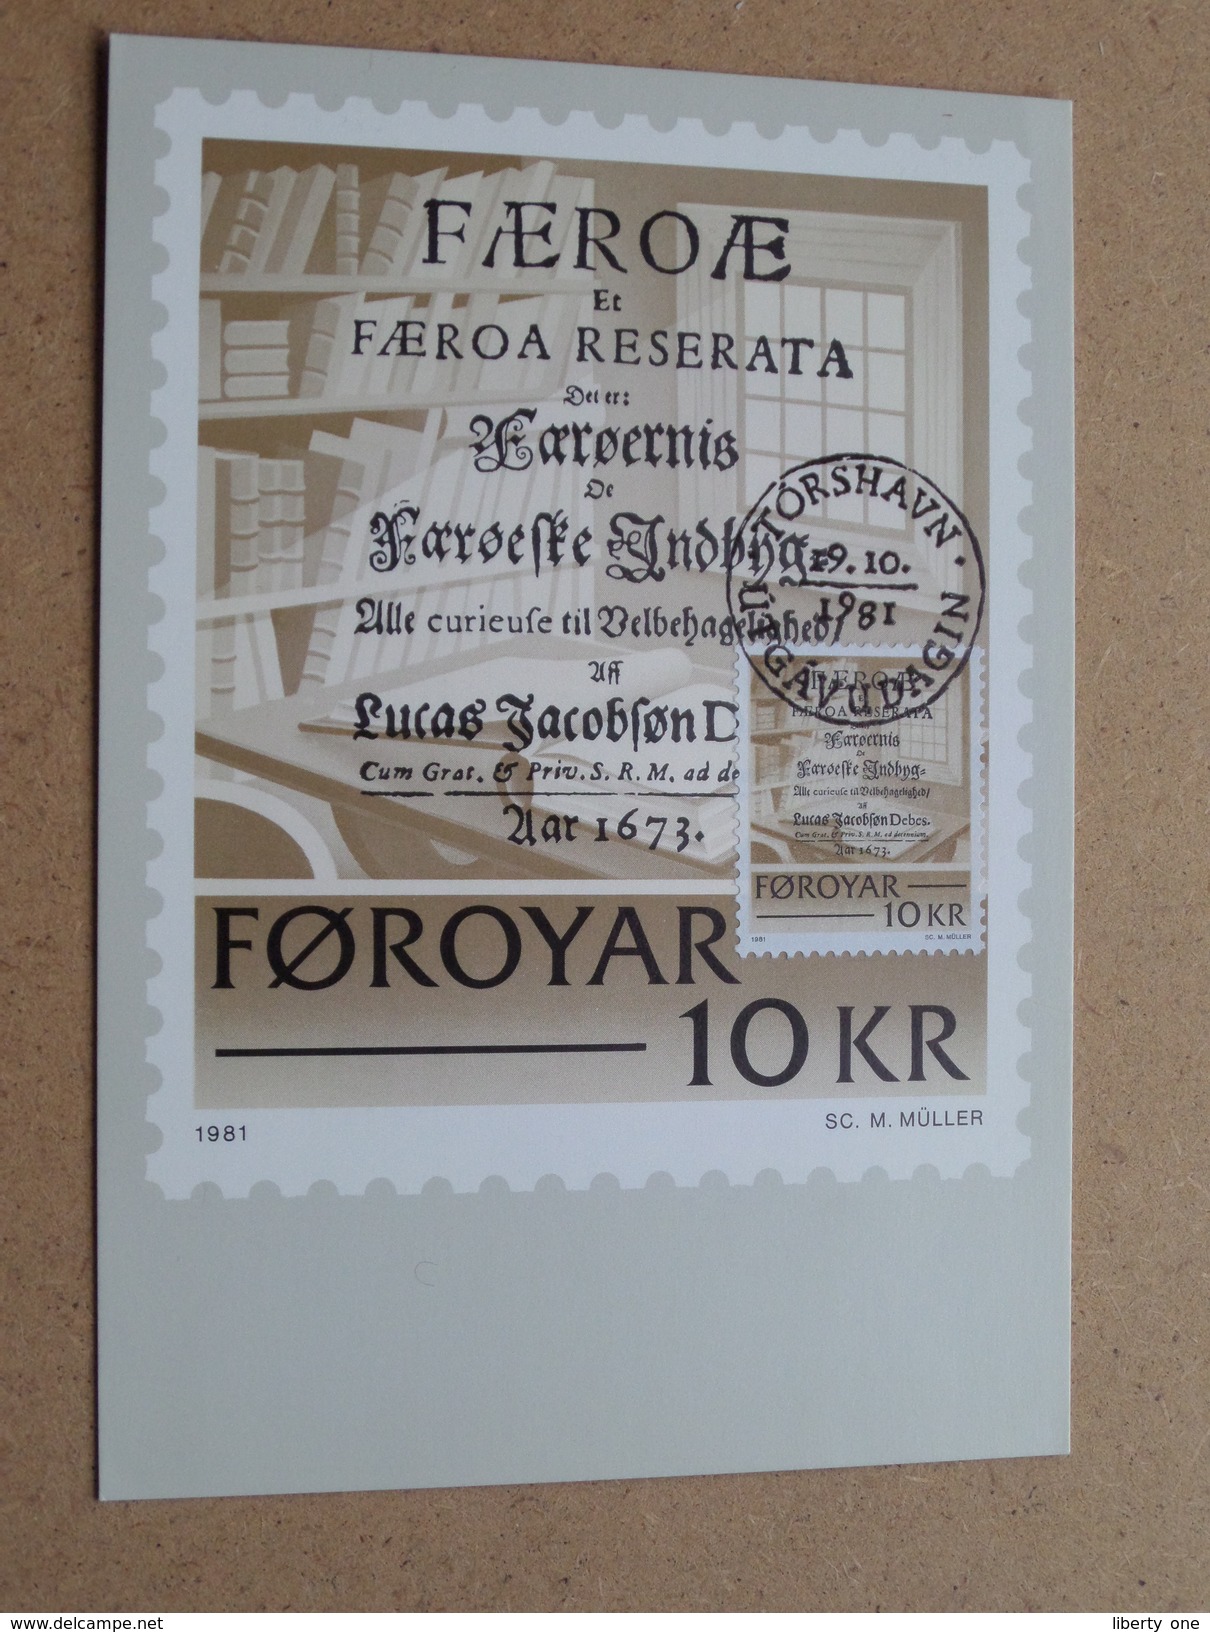 FOROYAR 10 KR (SC. M. MÜLLER) Stamp TORSHAVN 19-10-1981 ( Zie Foto ) ! - Cartes-maximum (CM)